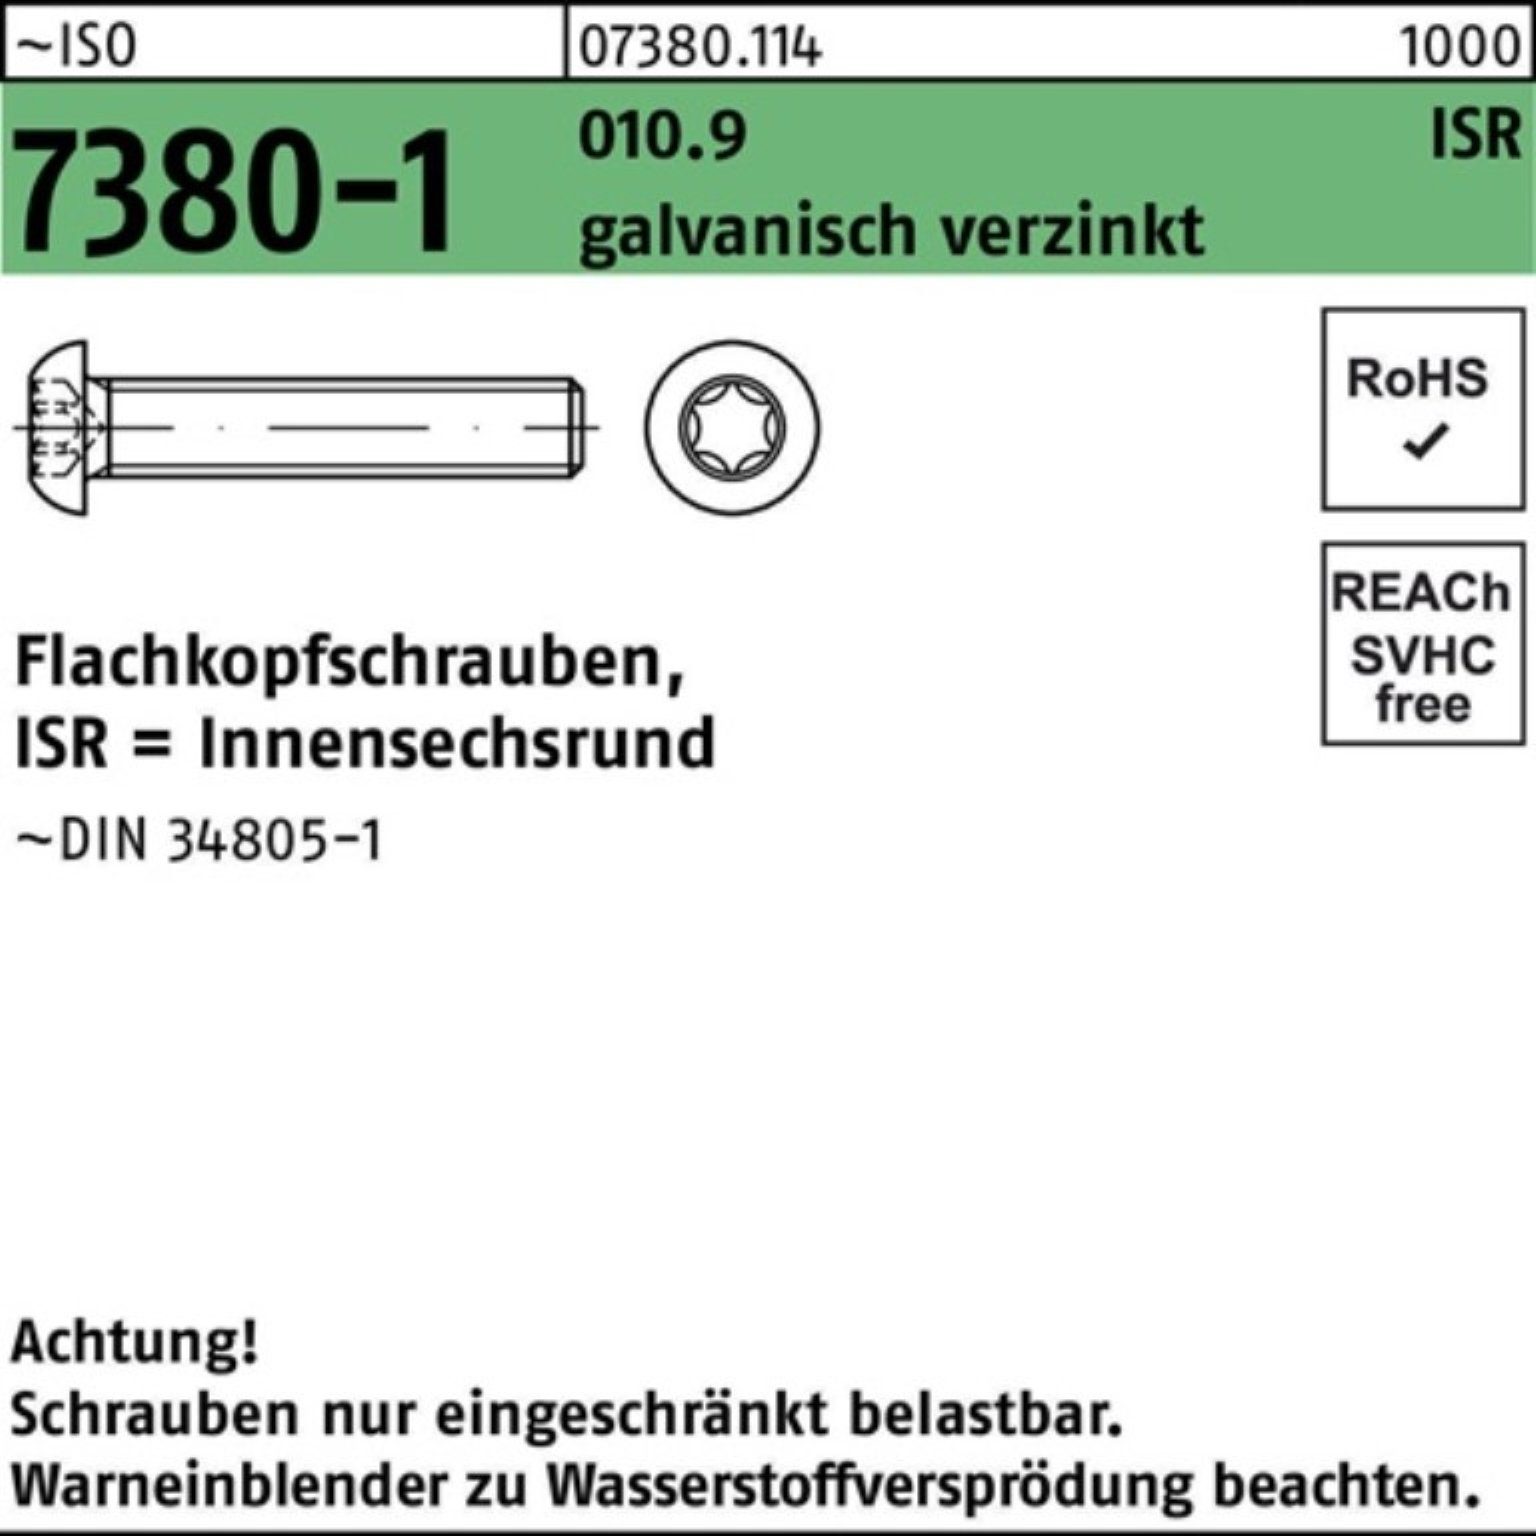 Flachkopfschraube 010.9 Pack 500er galv.verz. Reyher 7380-1 ISO Schraube ISR M5x25-T25